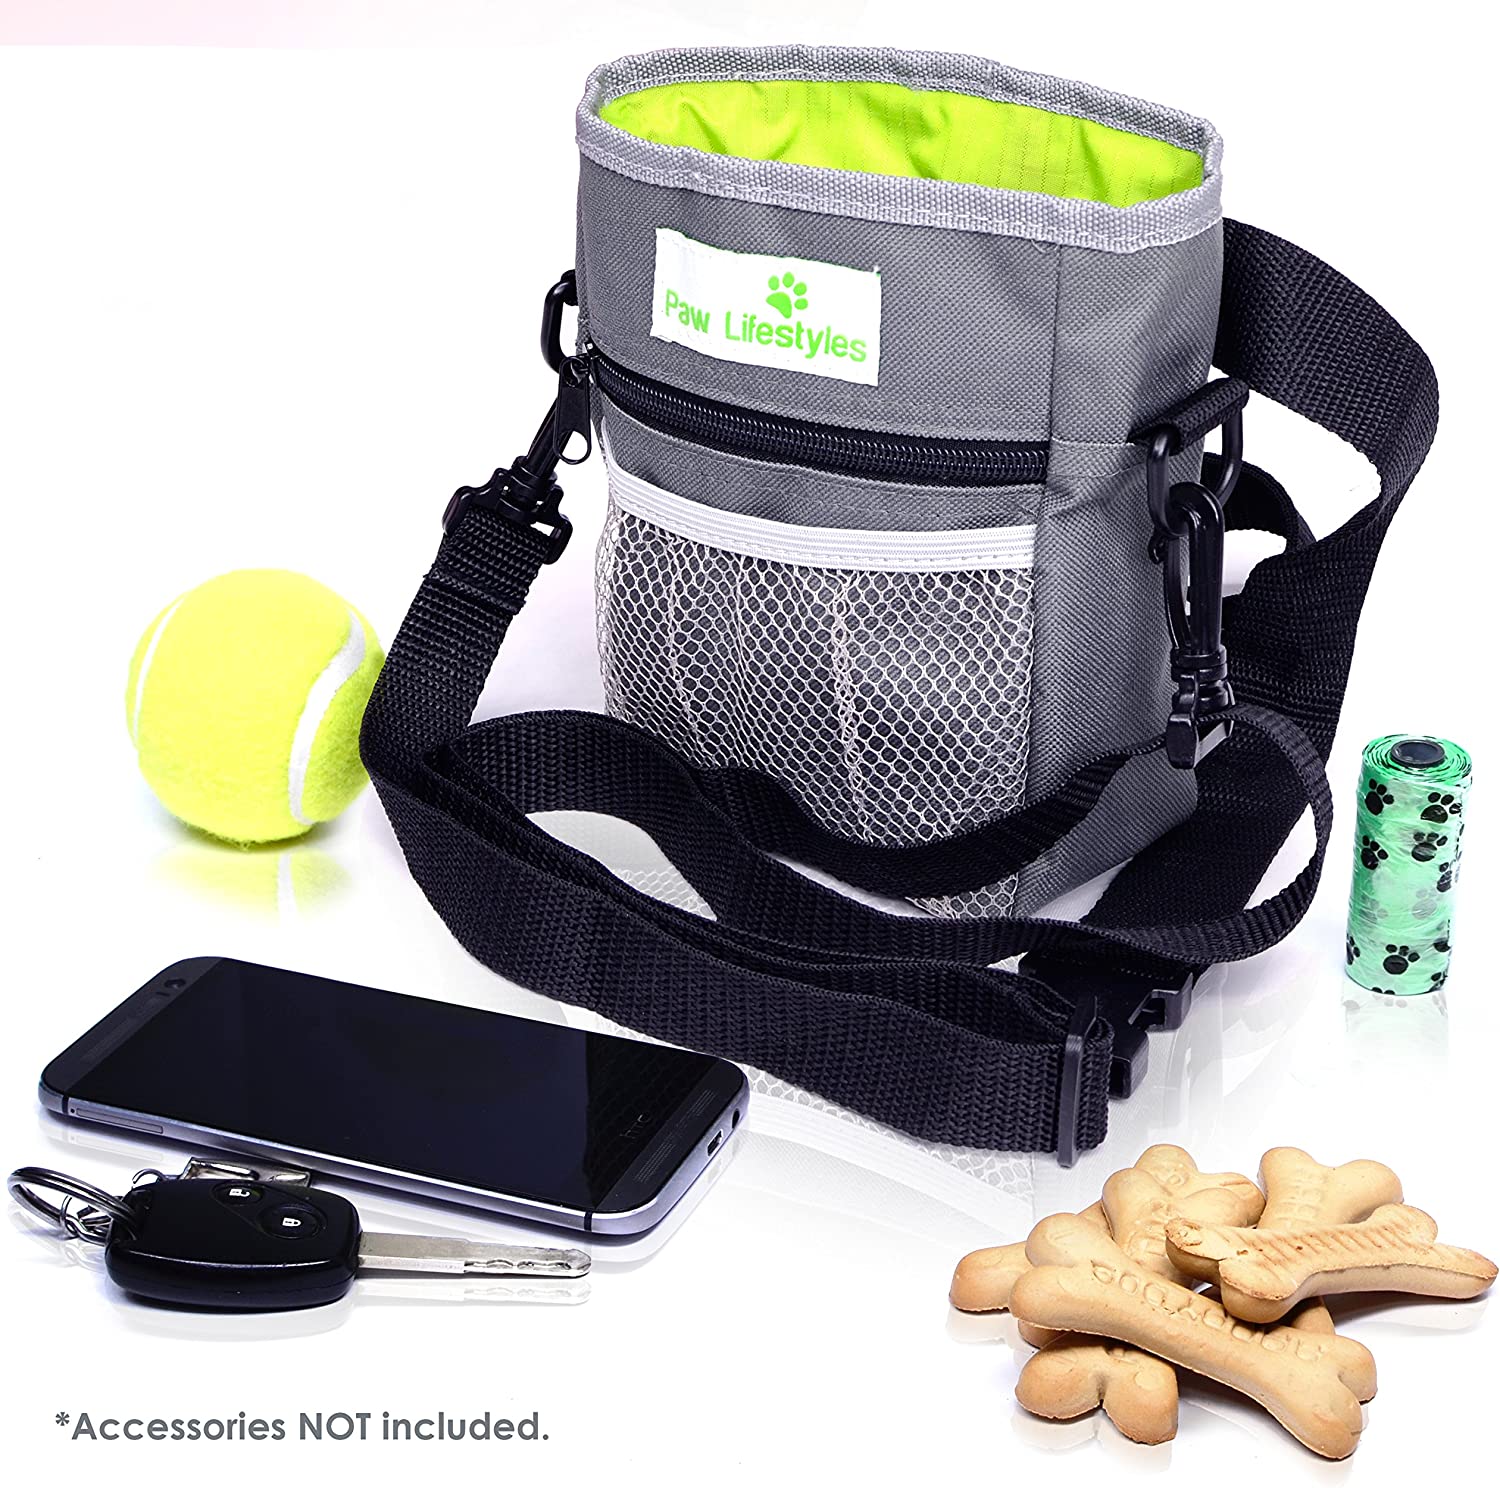 Oanpast ferstelbere fabryk Waterproof Dog Training Food Bags